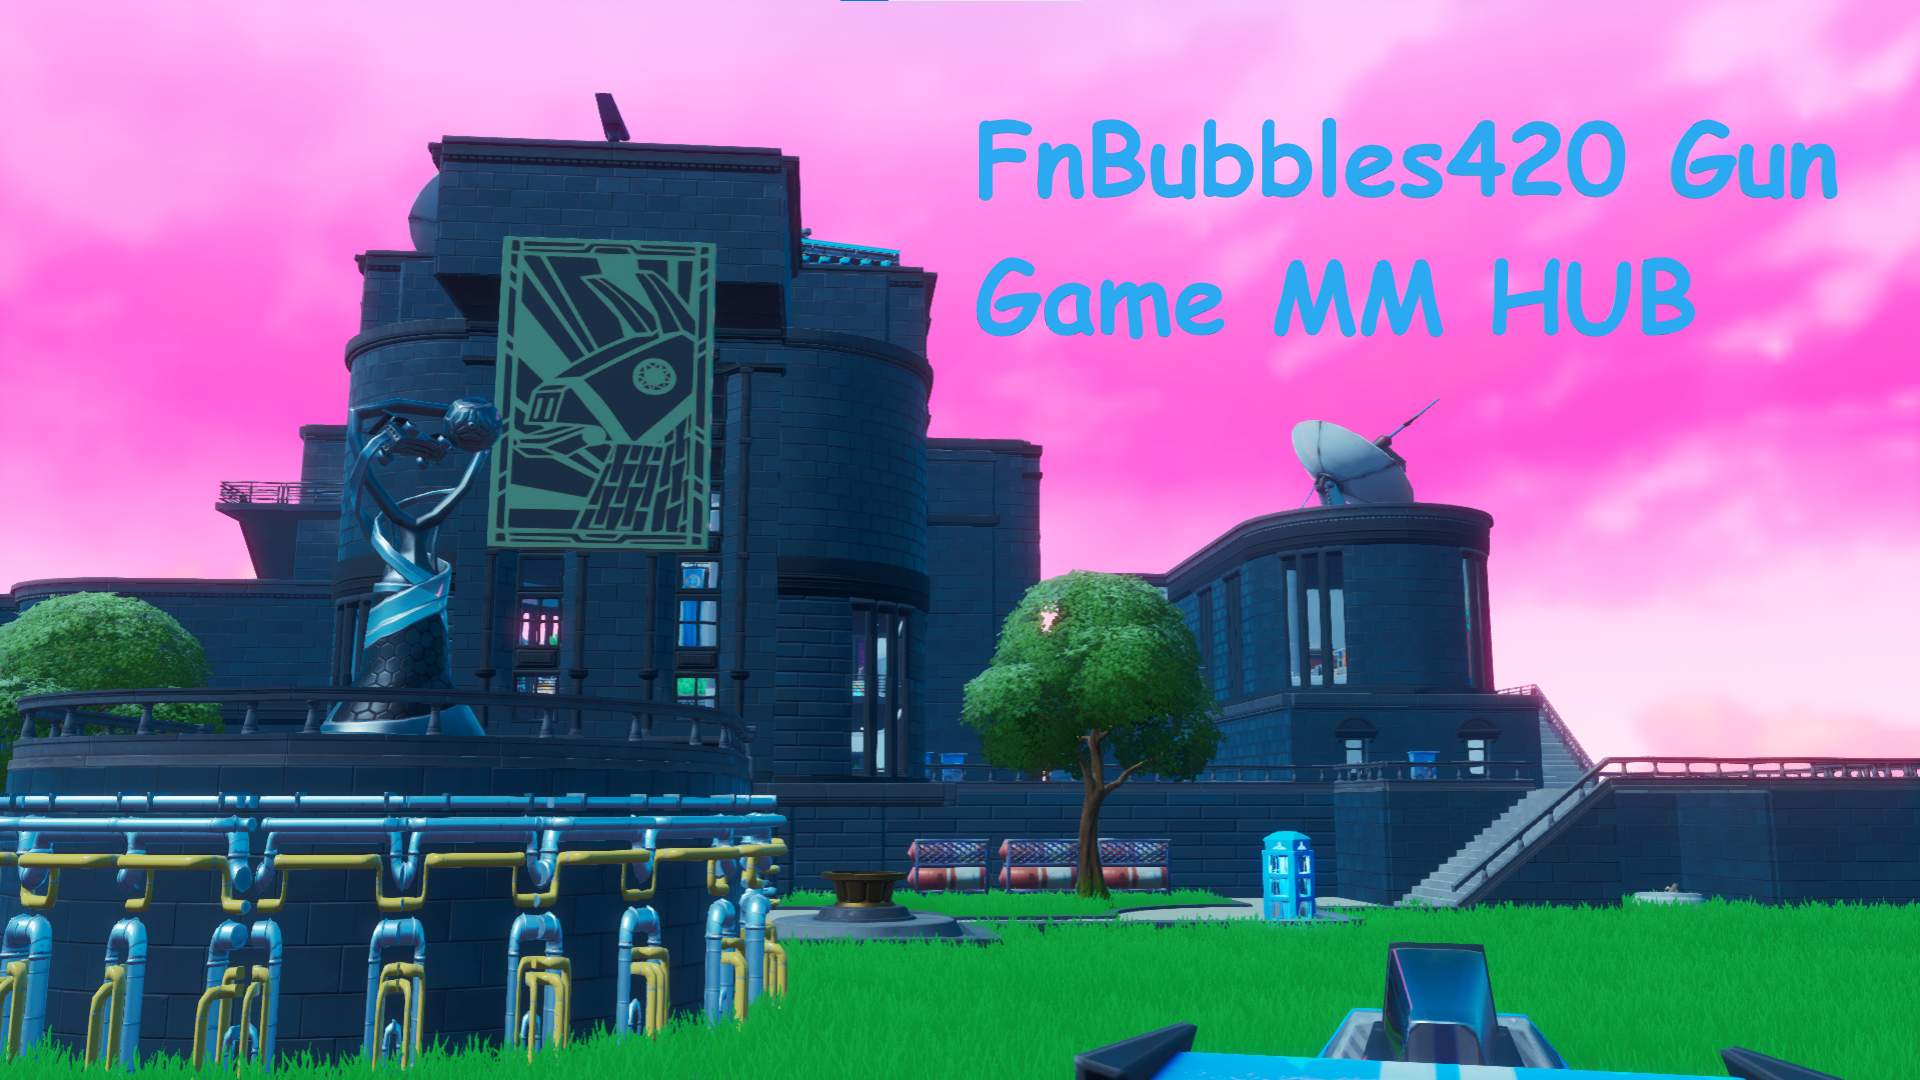 fnbubbles420 gun game MM Hub